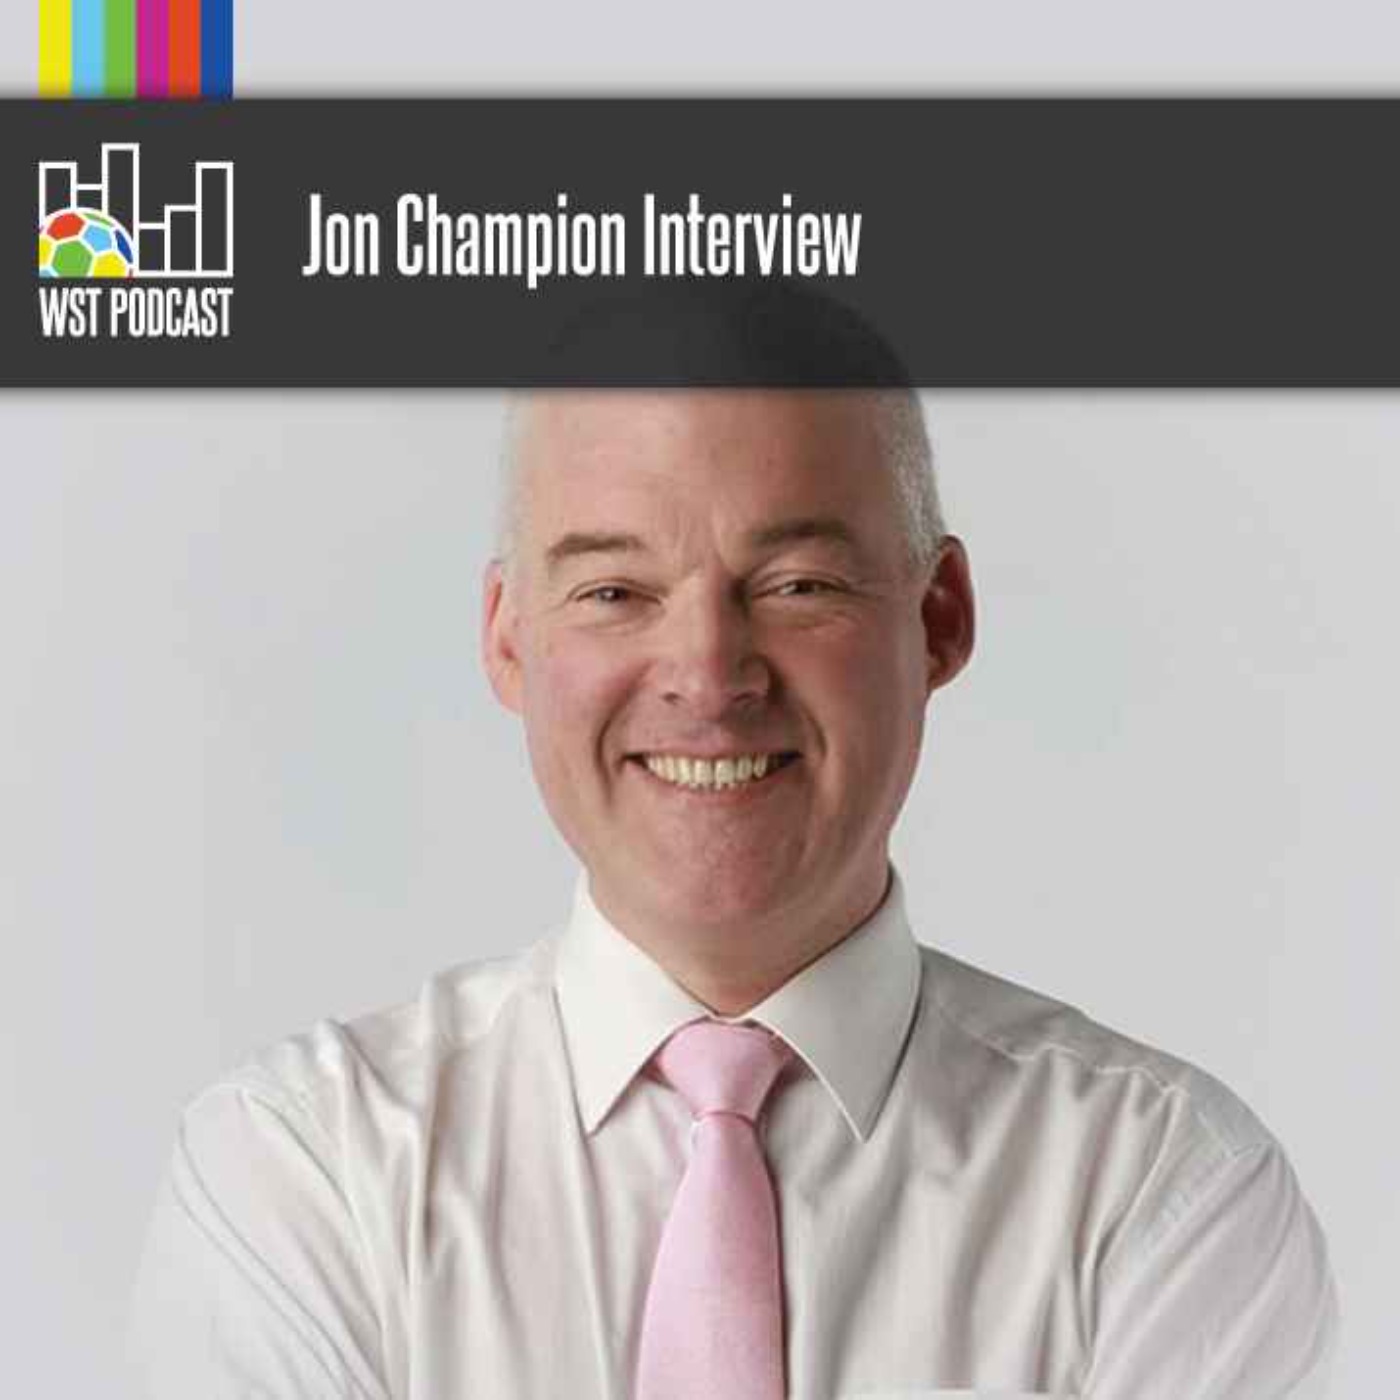 Jon Champion Interview: Legendary Premier League commentator